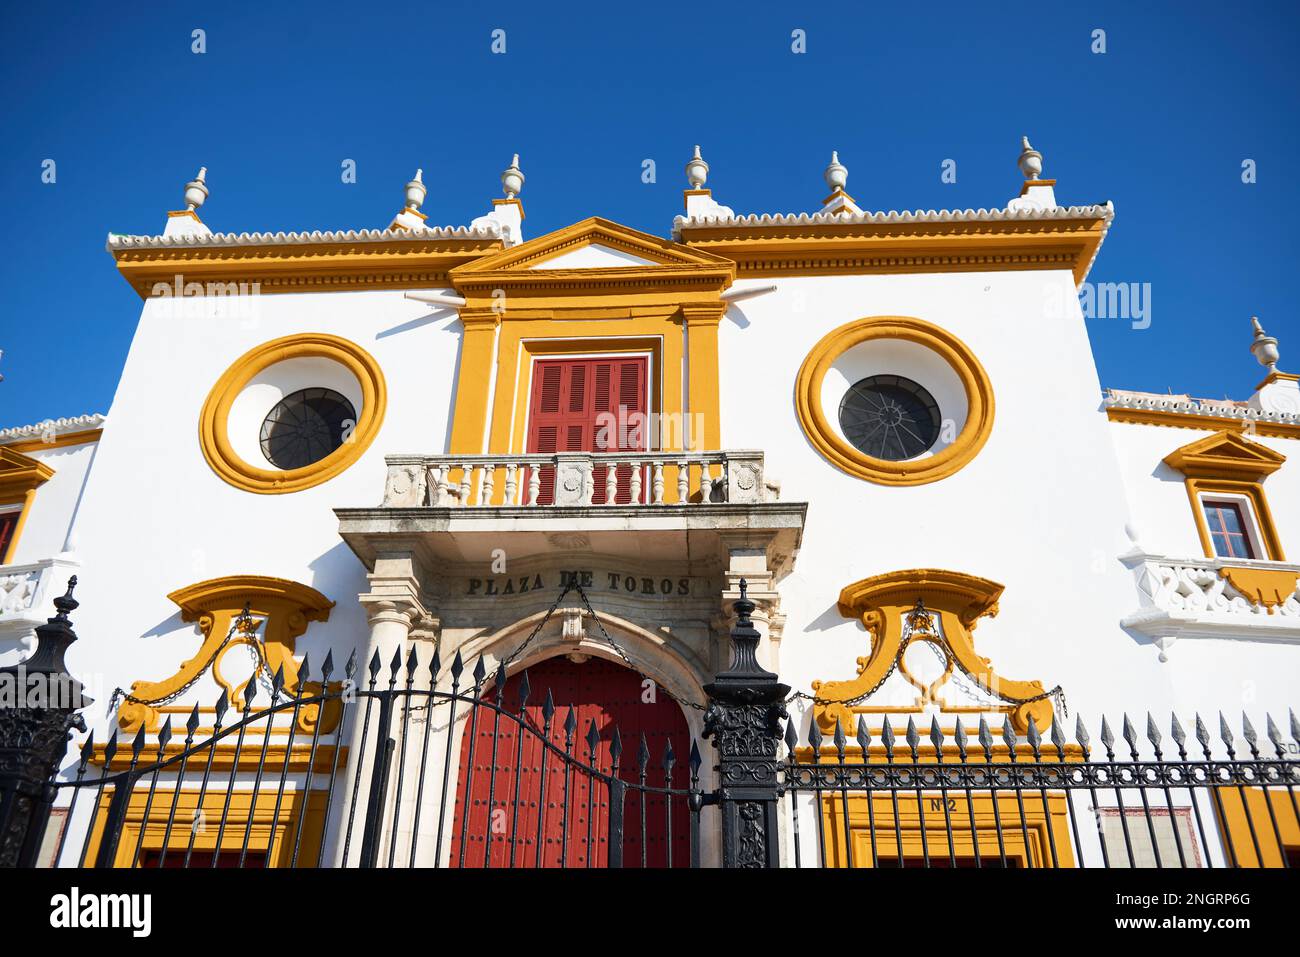 Dettaglio dell'arena di 'la Maestranza', Siviglia, Andalusia, Spagna, Europa. Foto Stock